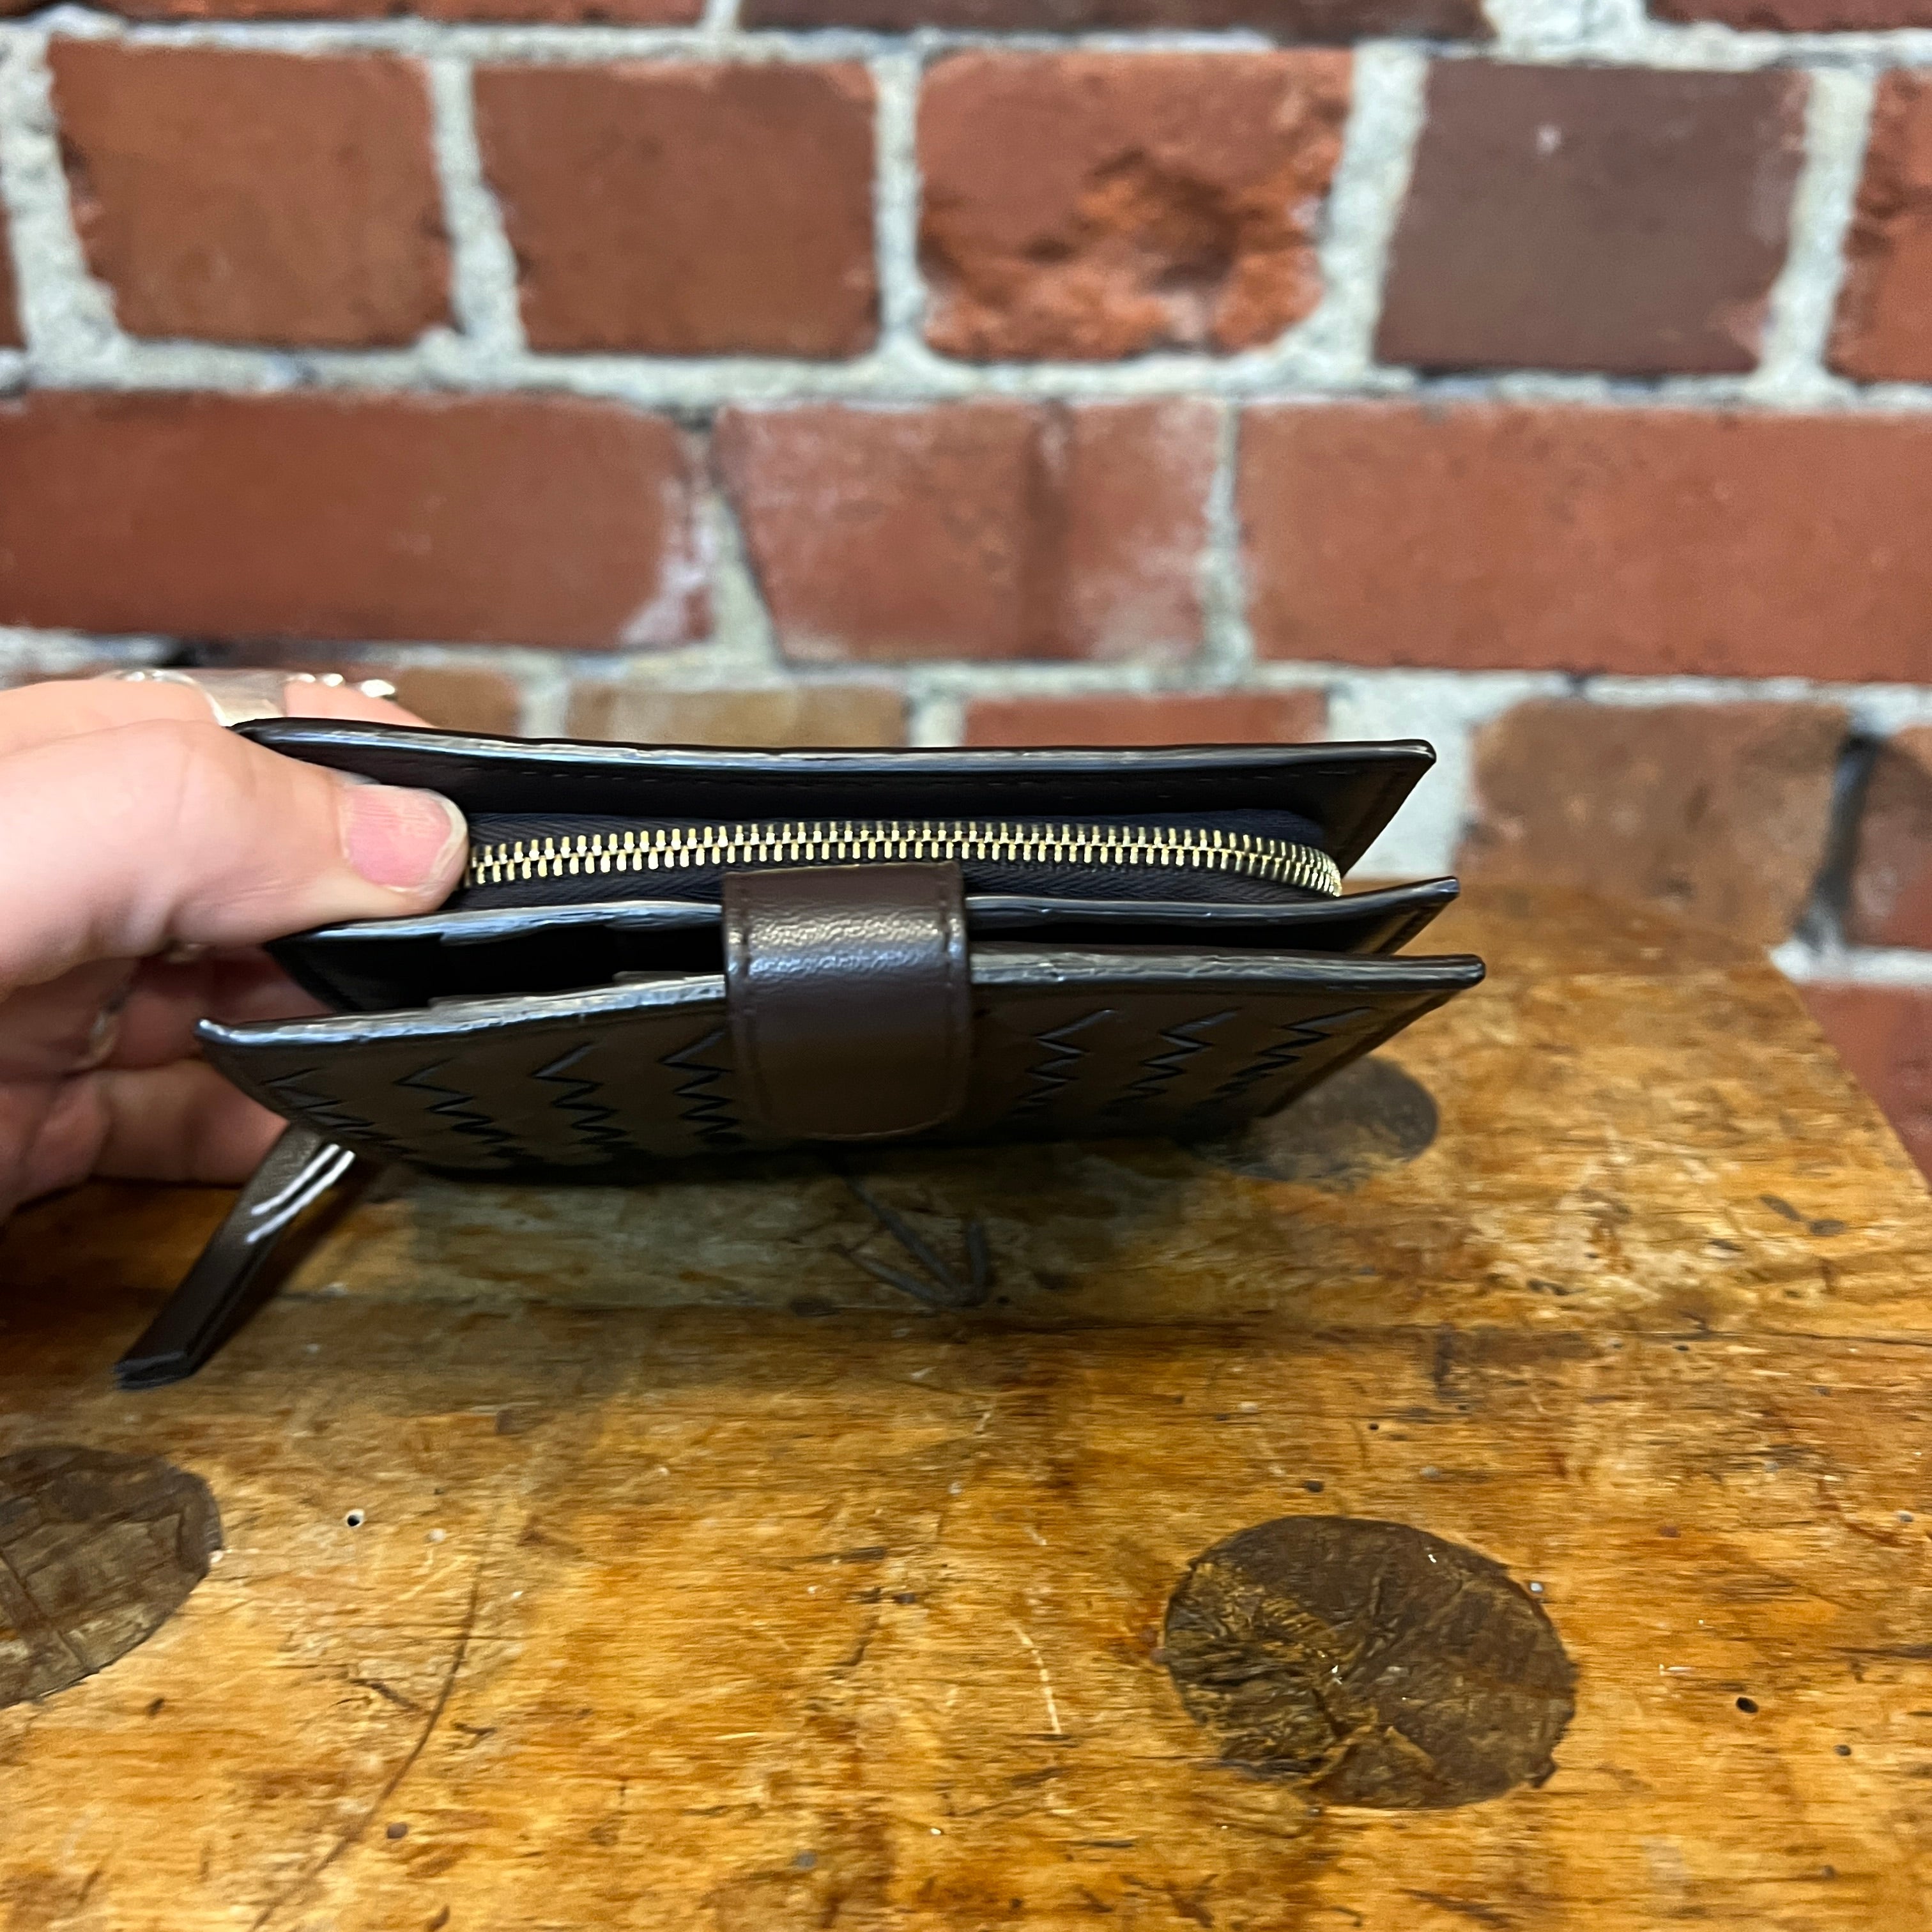 BOTTEGA VEETTA leather wallet